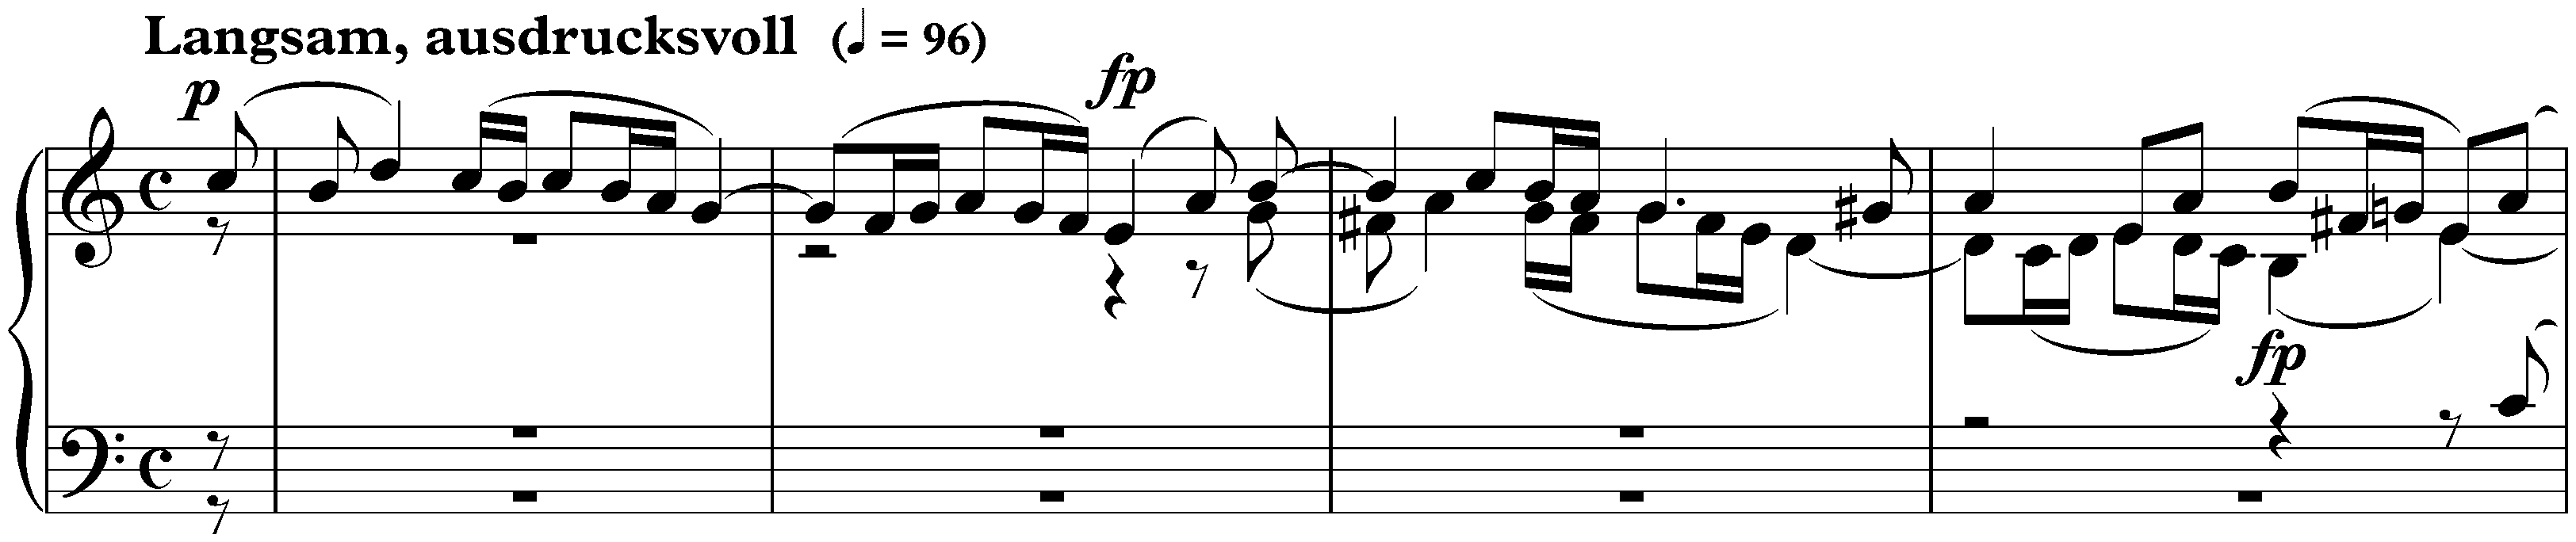 Sieben Stücke in Fughettenform, op. 126; 7. Langsam, ausdrucksvoll